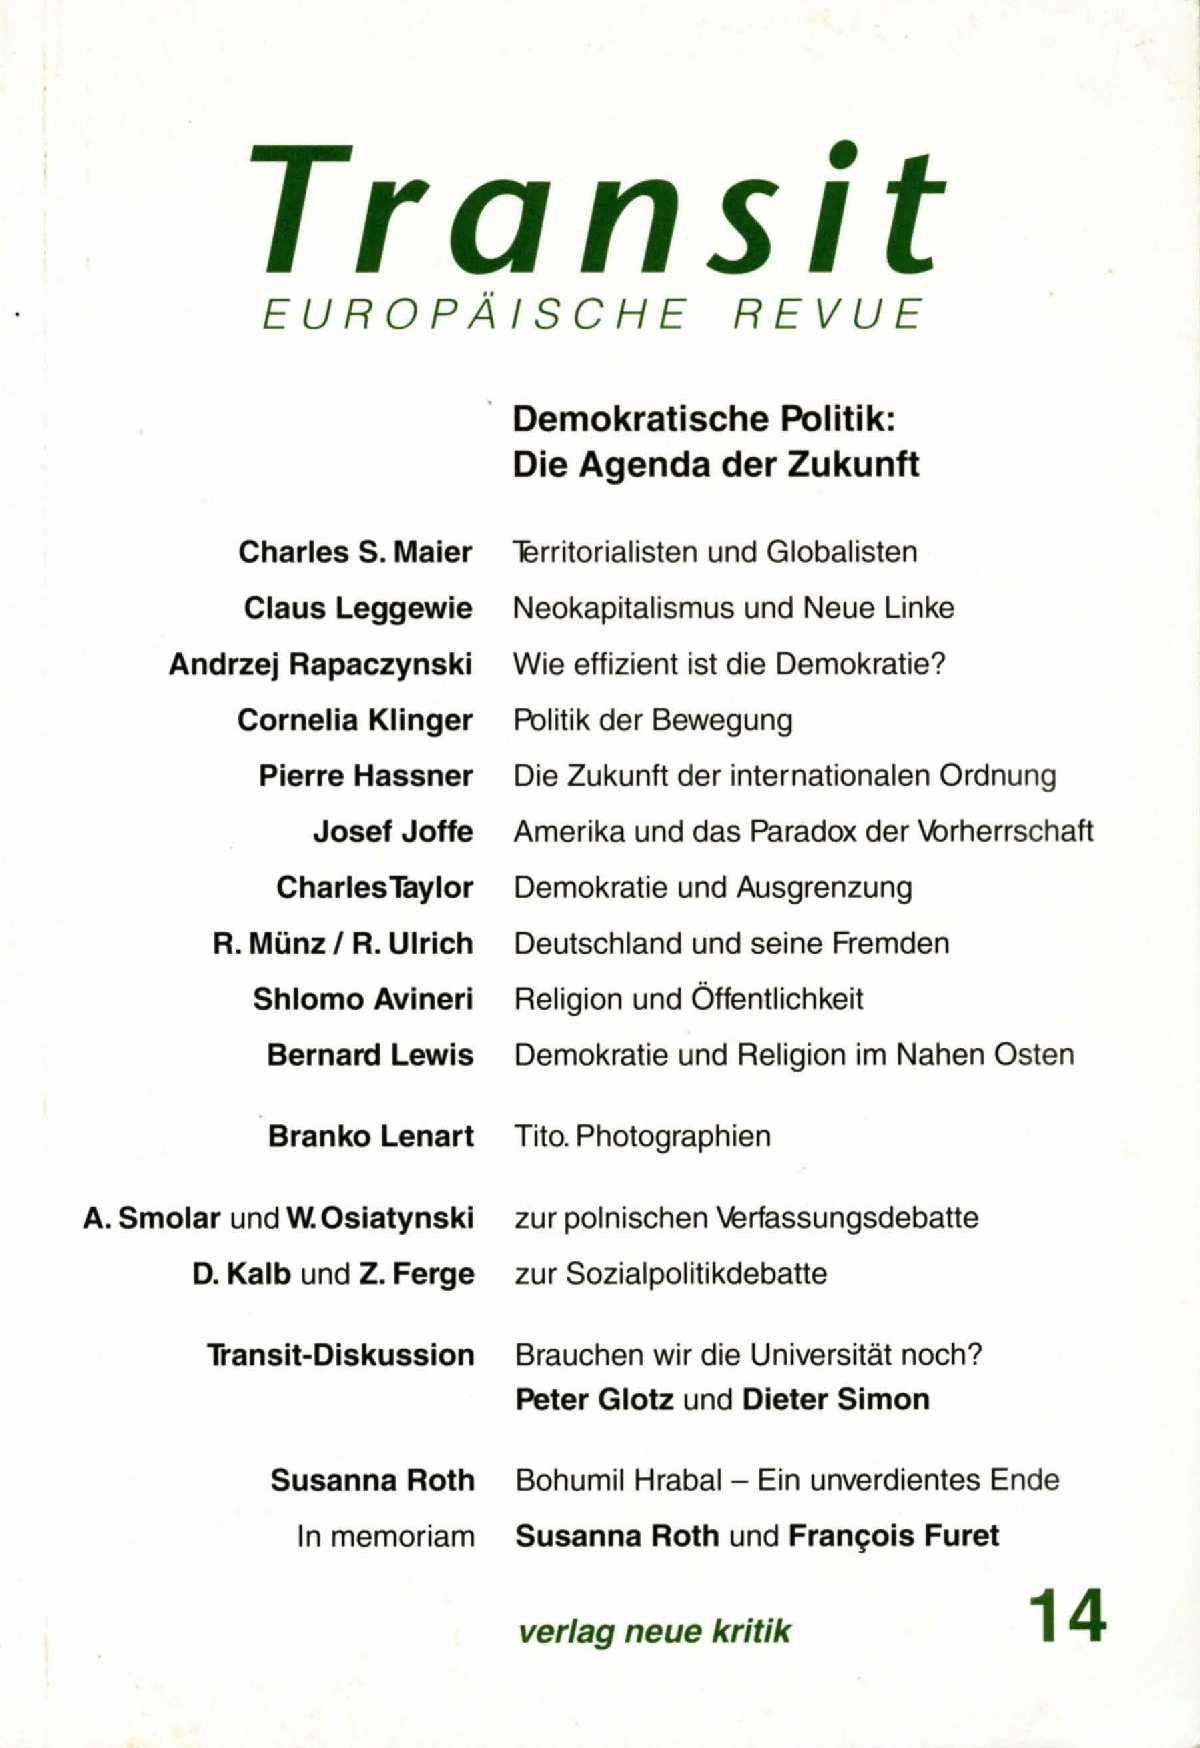 Ketzerische Bemerkungen zur neuen sozialen Orthodoxie
Replik auf Christoph Sachße (Heft 13) Cover Image